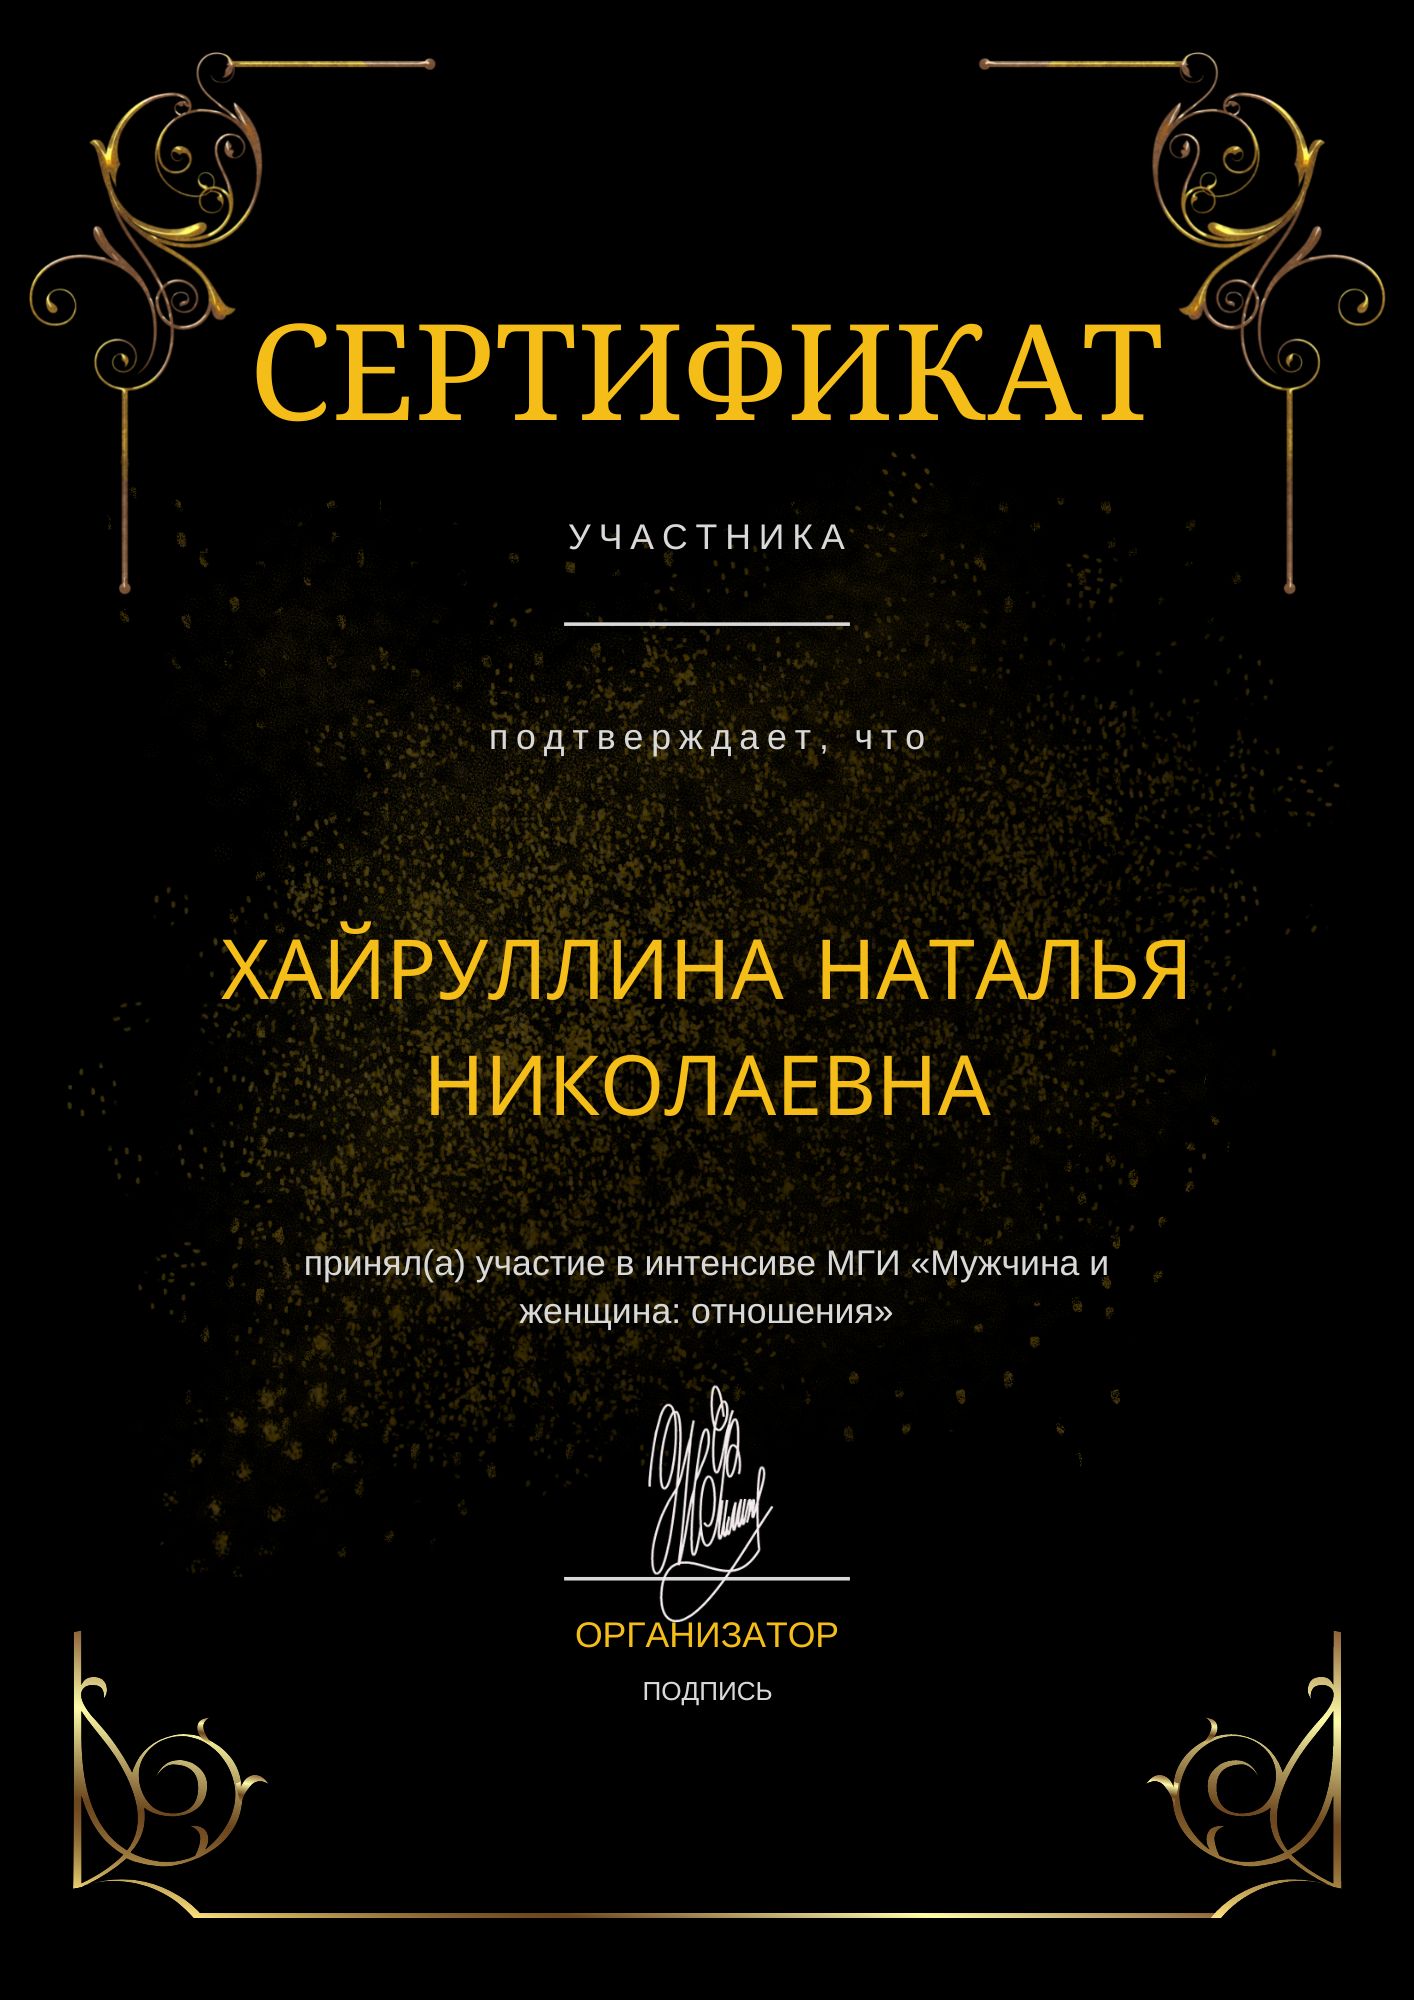 Фотография сертификата Хайруллиной Натальи Николаевны за участия в МГИ